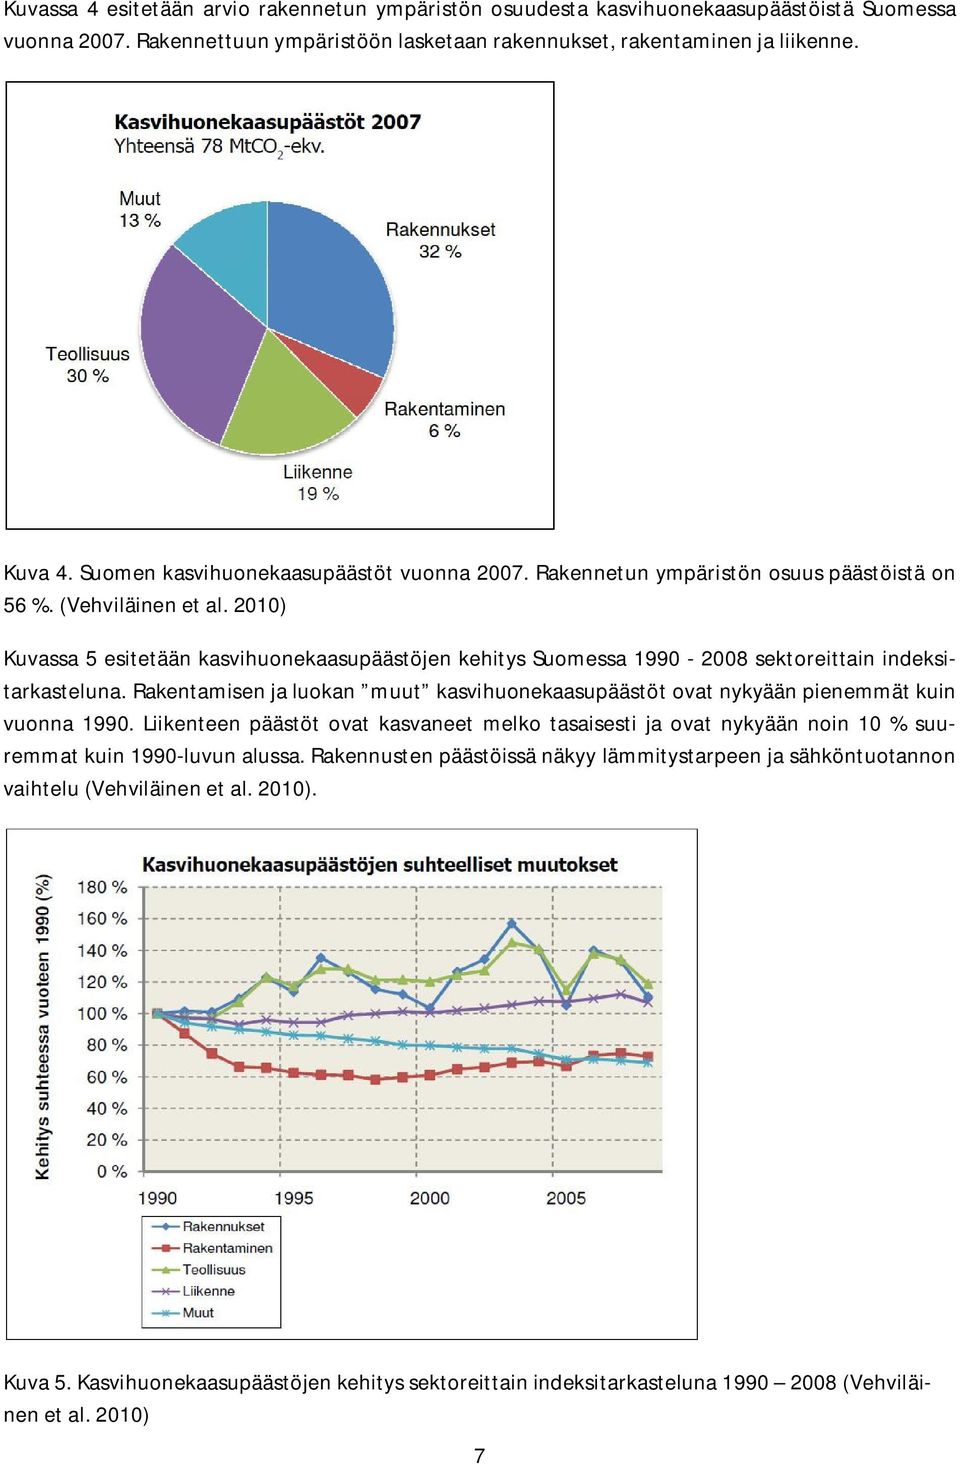 2010) Kuvassa 5 esitetään kasvihuonekaasupäästöjen kehitys Suomessa 1990-2008 sektoreittain indeksitarkasteluna.